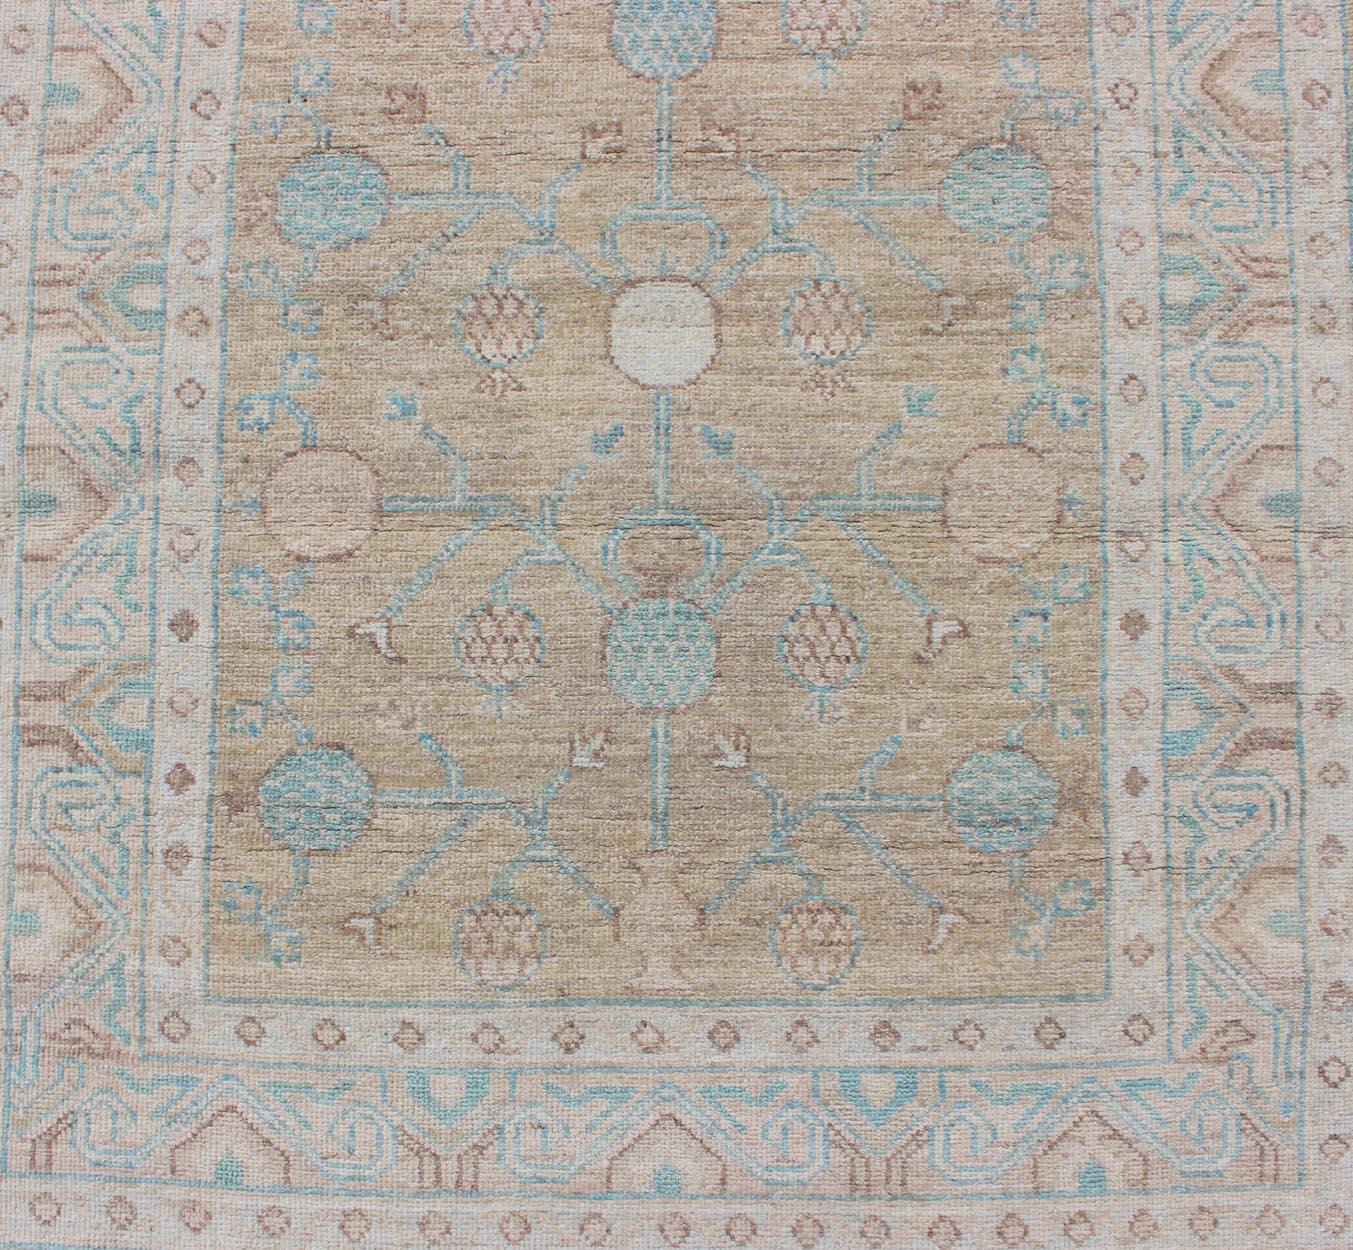 Wool Pomegranate Khotan Design Long Runner in Soft Gold & L. Blue & Geometric Border For Sale